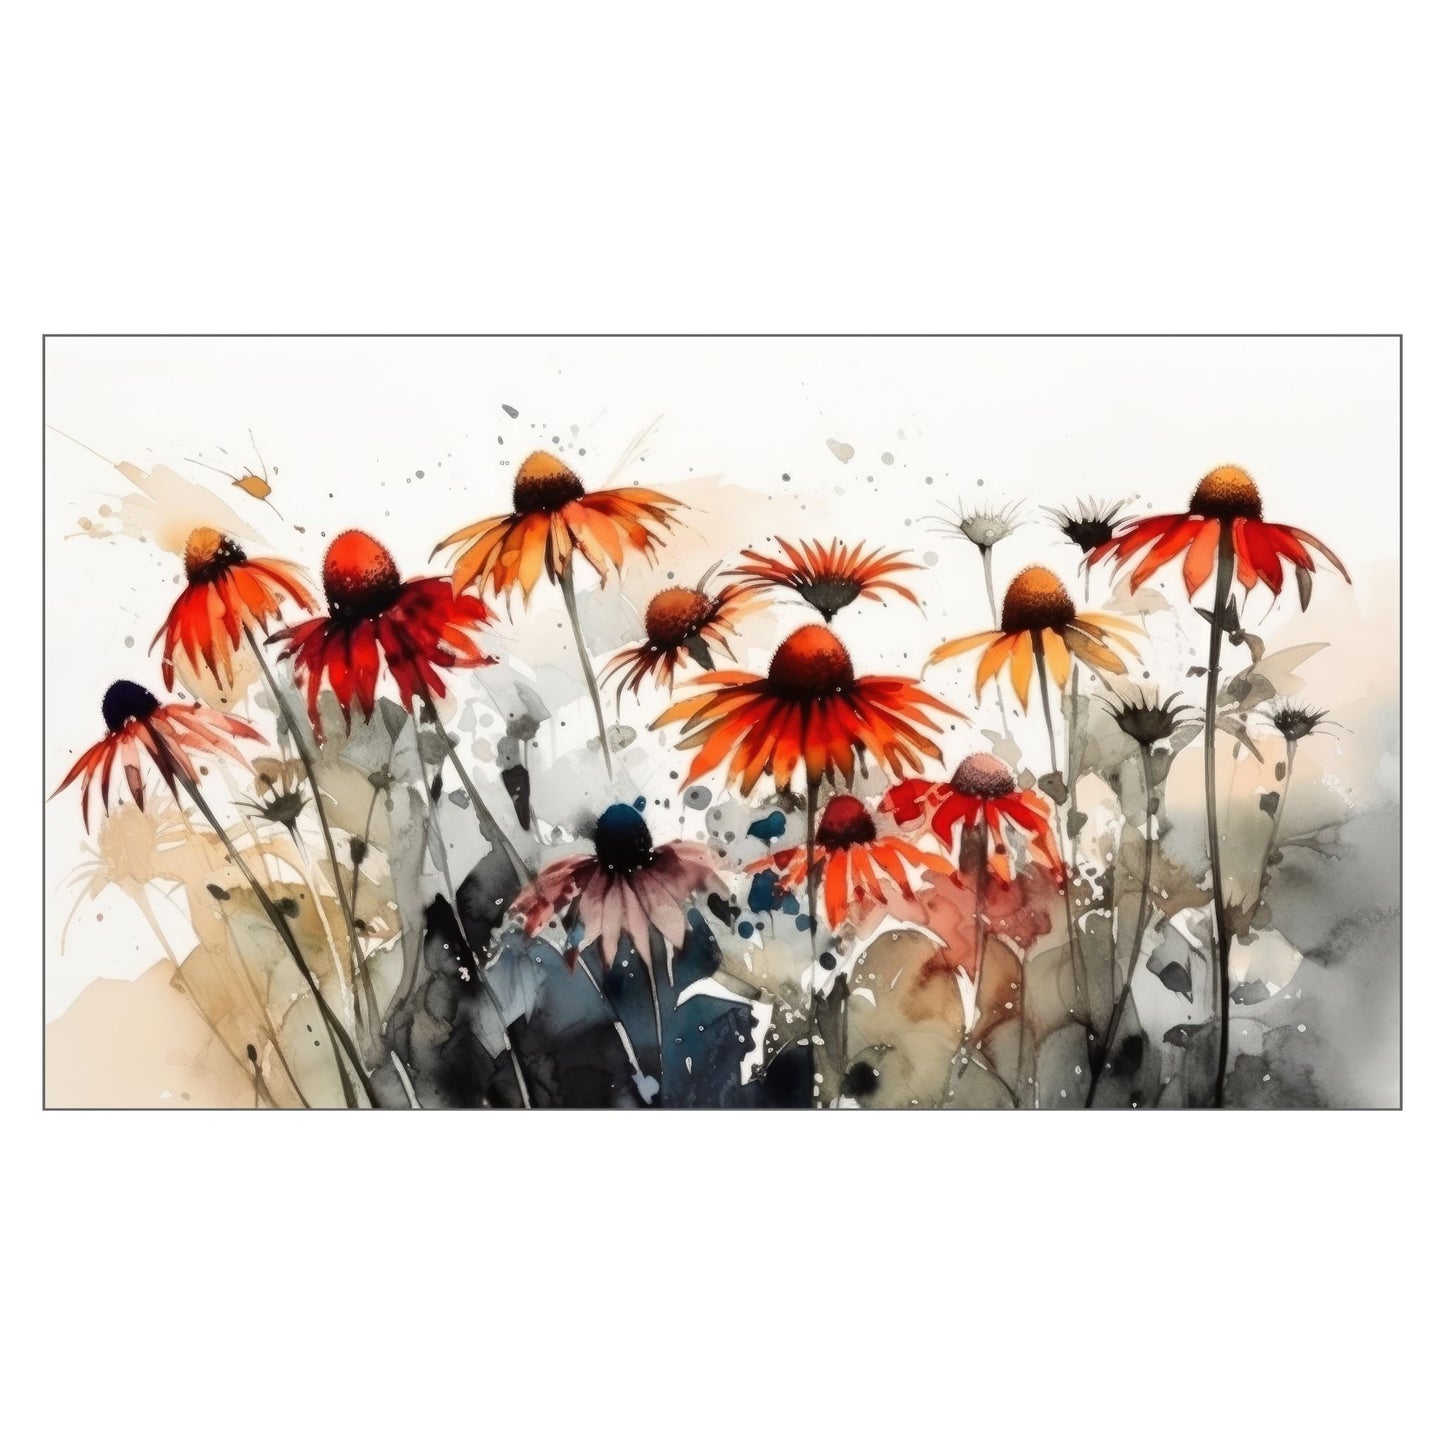 Nydelig abstrakt motiv av en eng med Solhattblomster. Dette er en grafisk fremstilling på lerret, Blomstene er i rød-oransje nyanser.